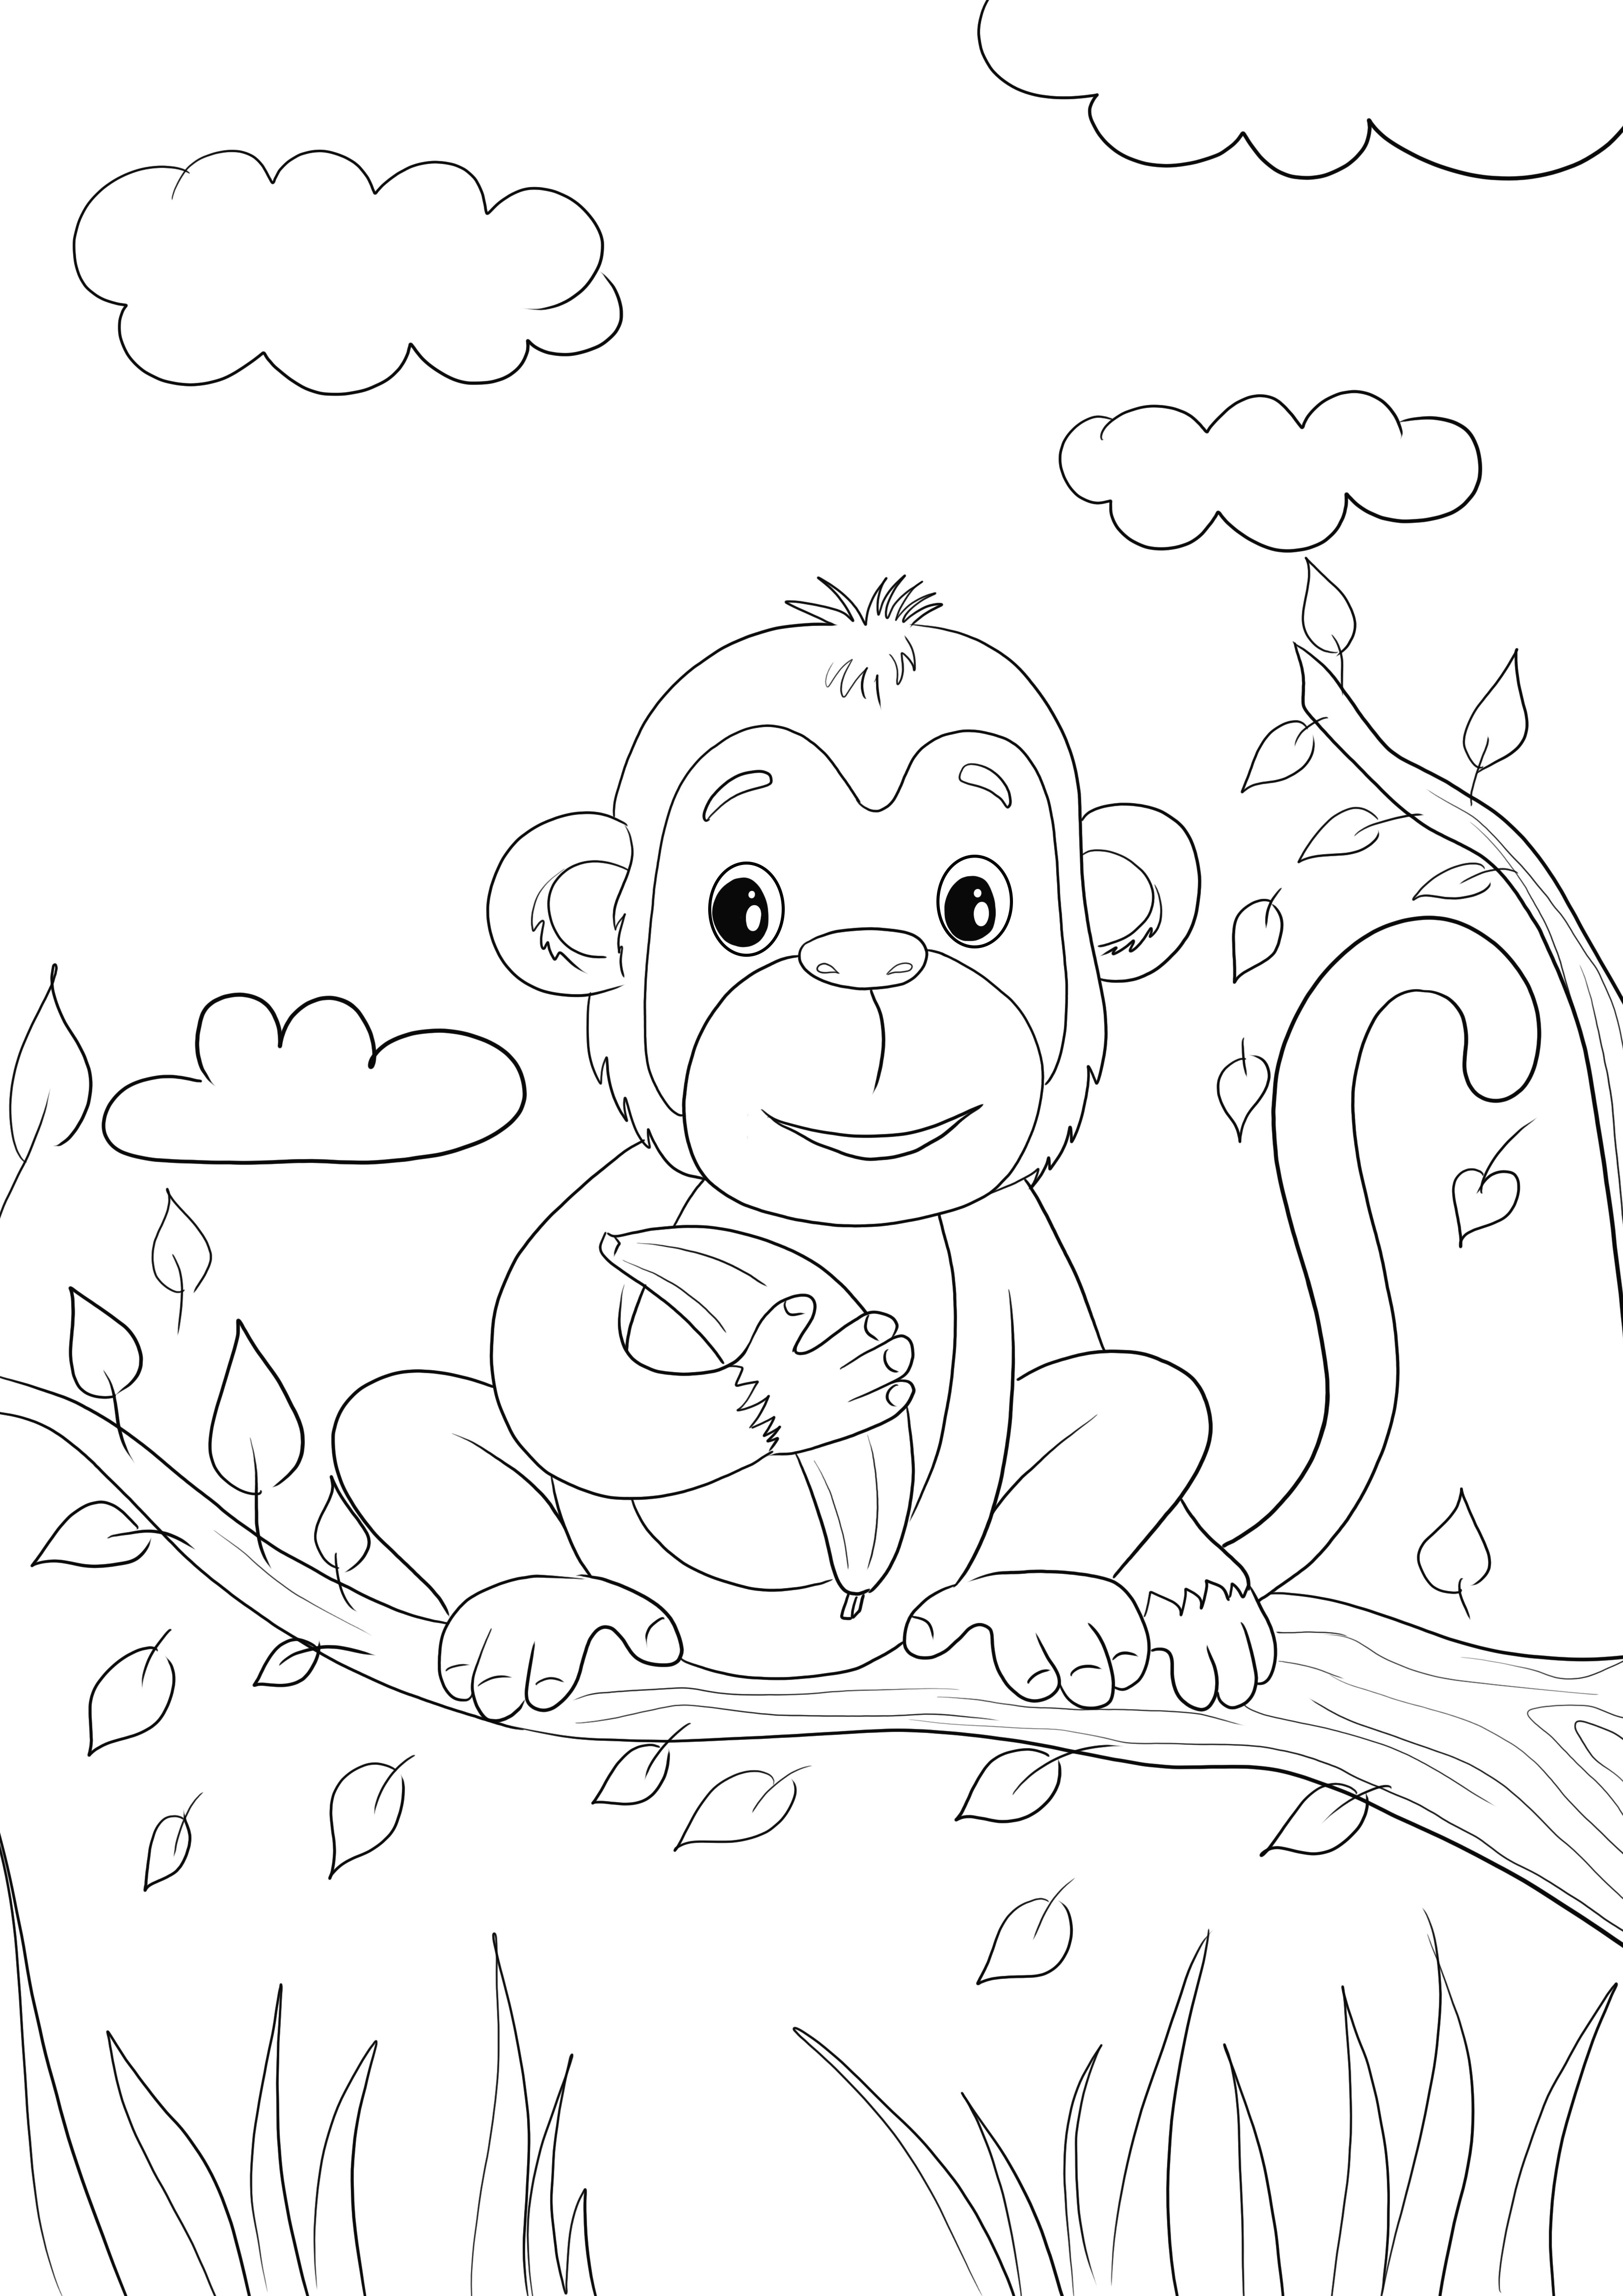 Ini adalah bayi monyet yang lucu memegang gambar mewarnai pisang yang bebas untuk dicetak atau disimpan untuk nanti